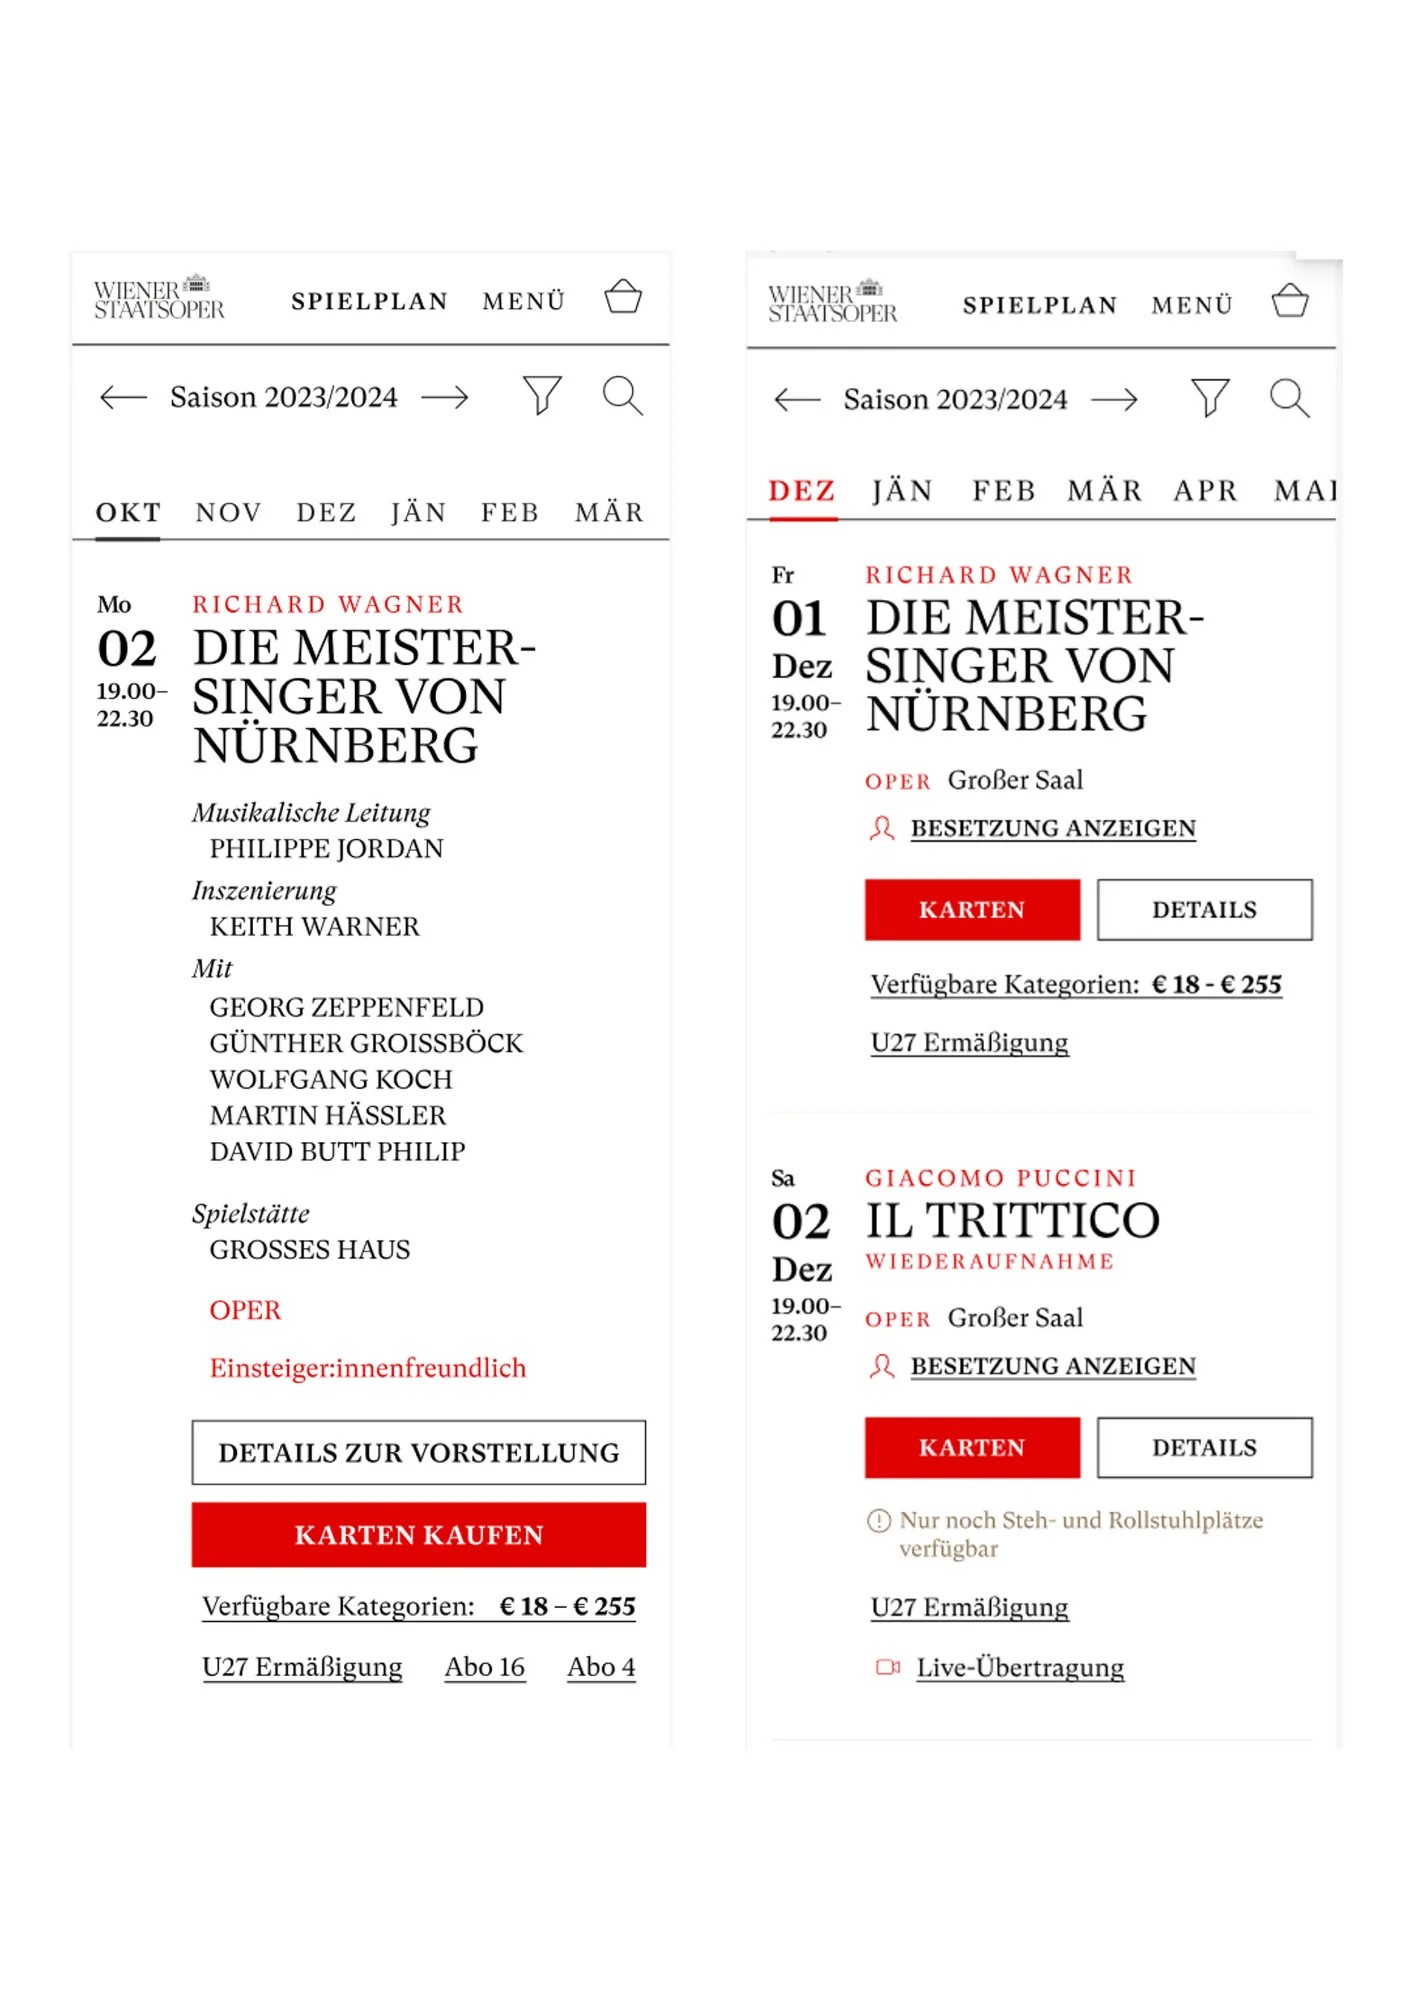 Screenshot mit einem Vergleich 2.10 Die Meistersinger von Nürnberg